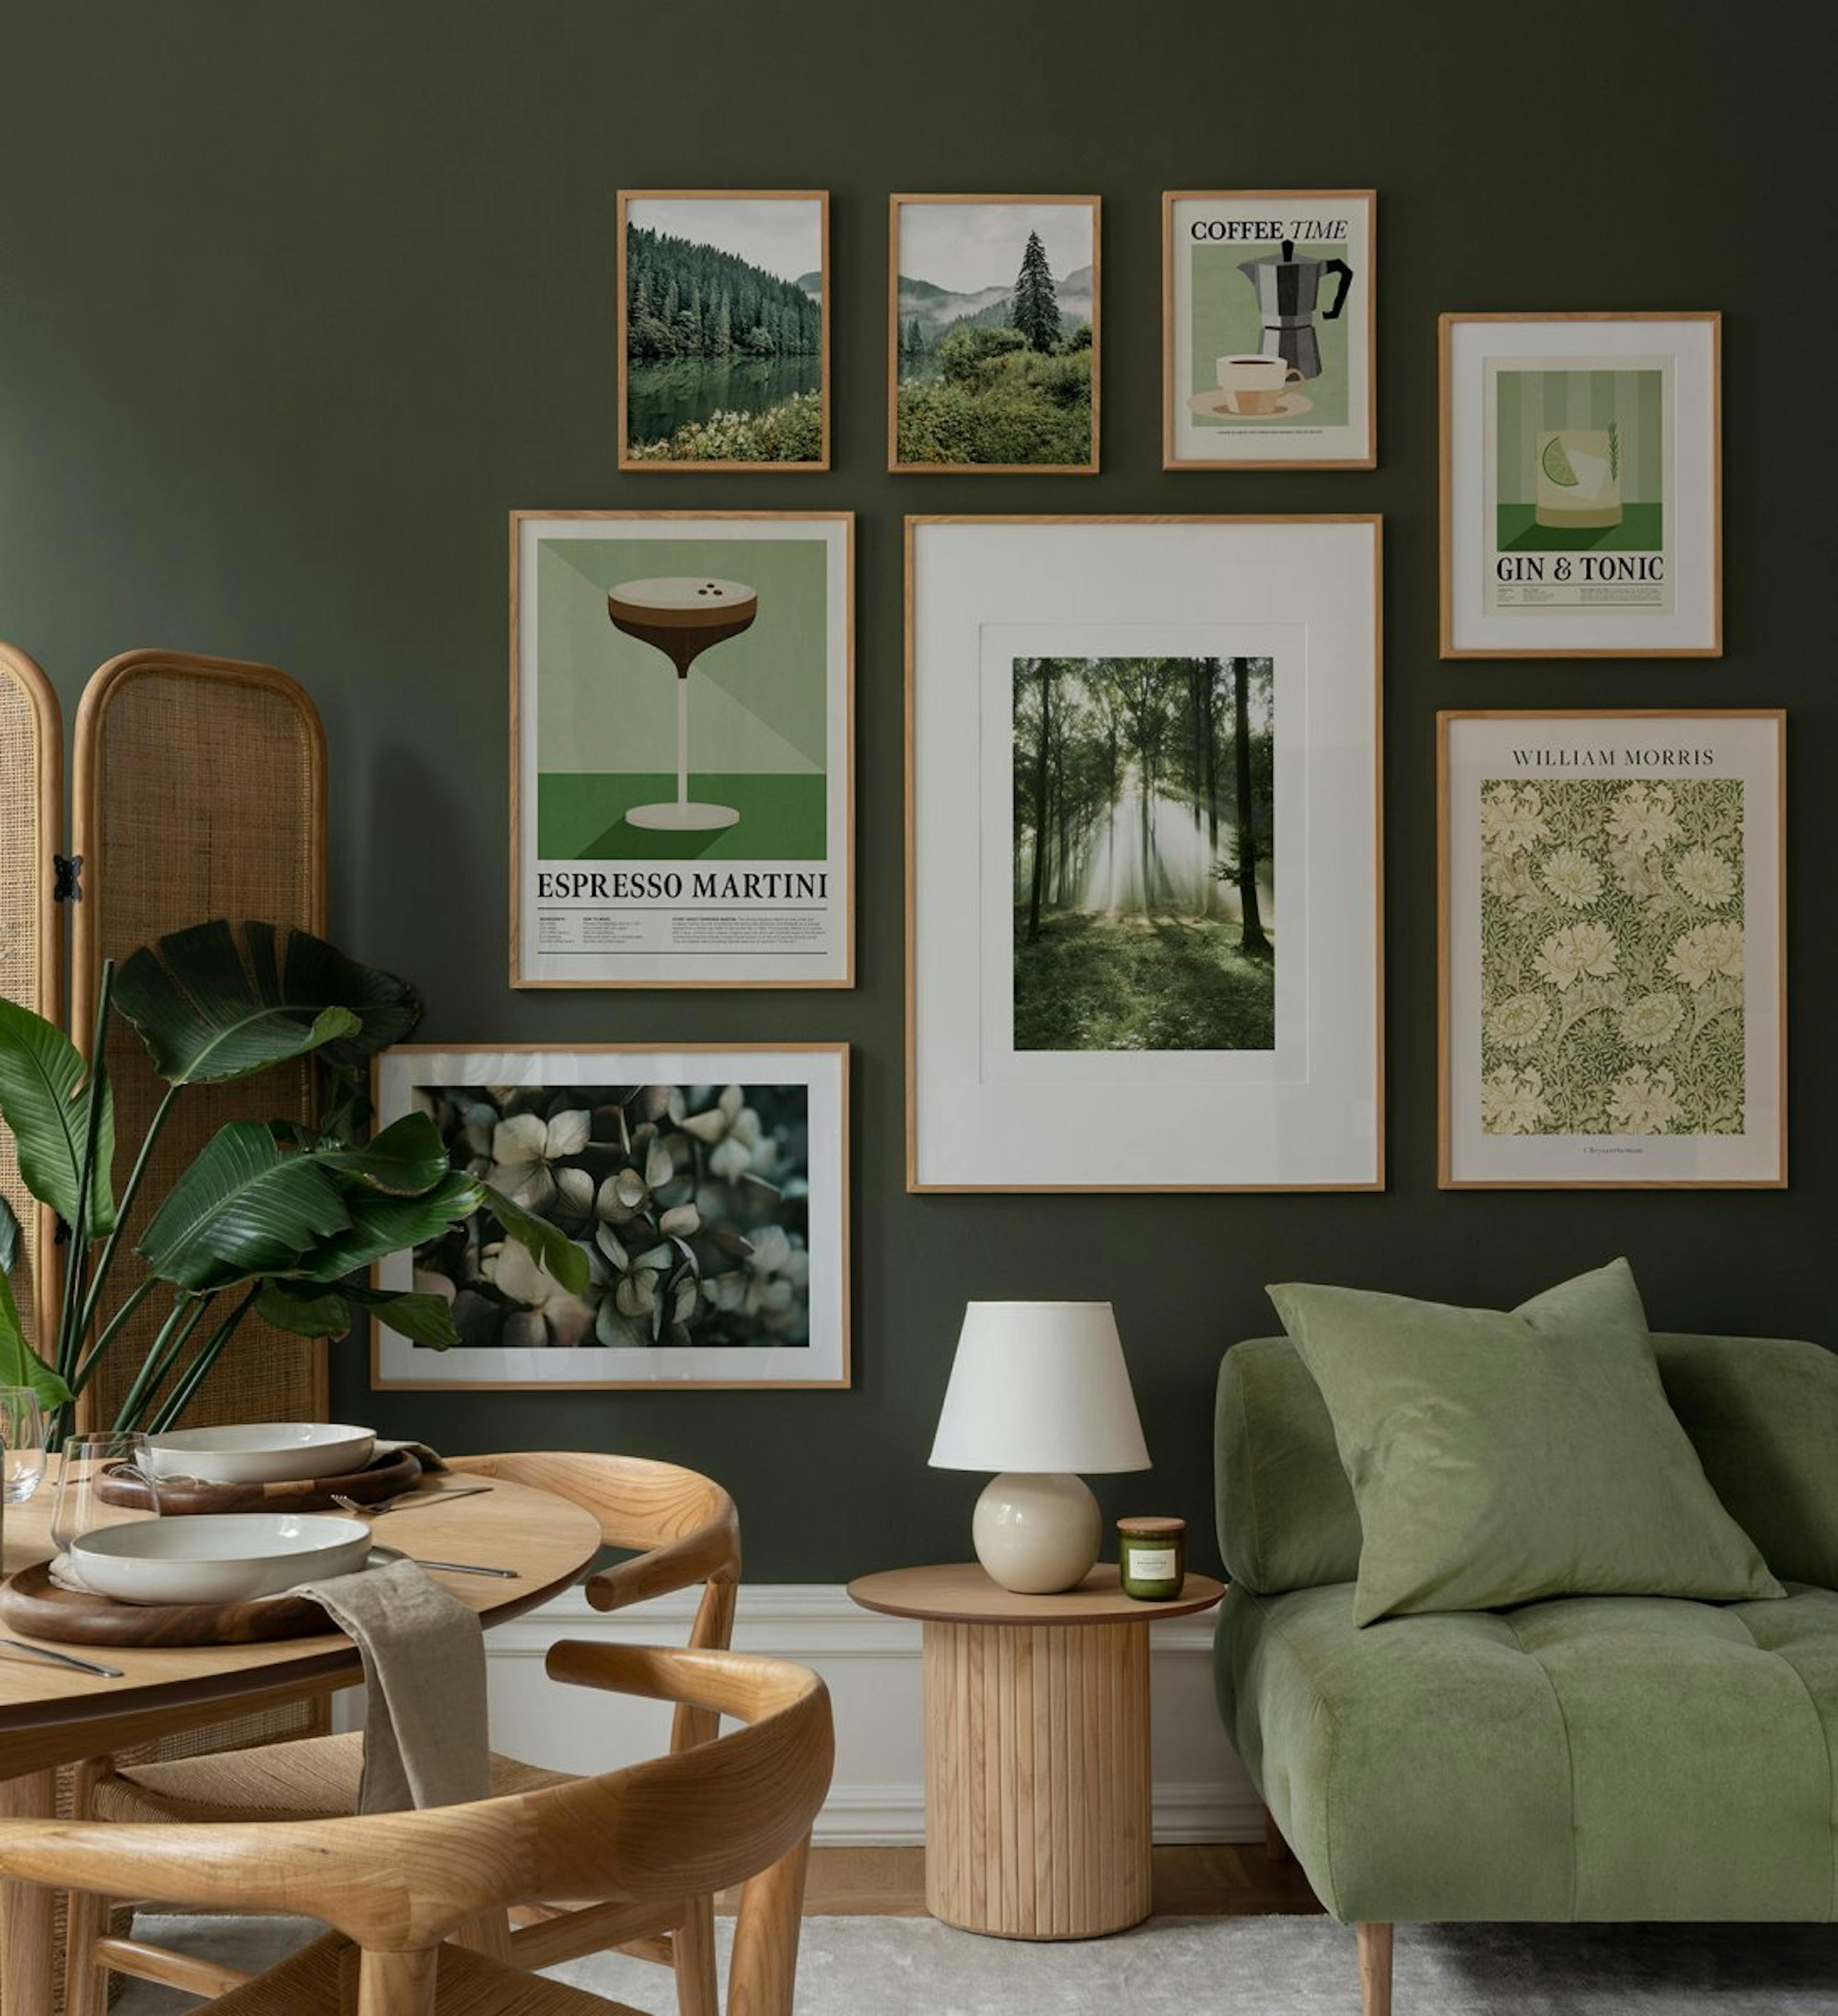 Pared de galera en tonos verdes y beige con una moderna combinación de estampados de naturaleza, flores y retro con marcos de ro